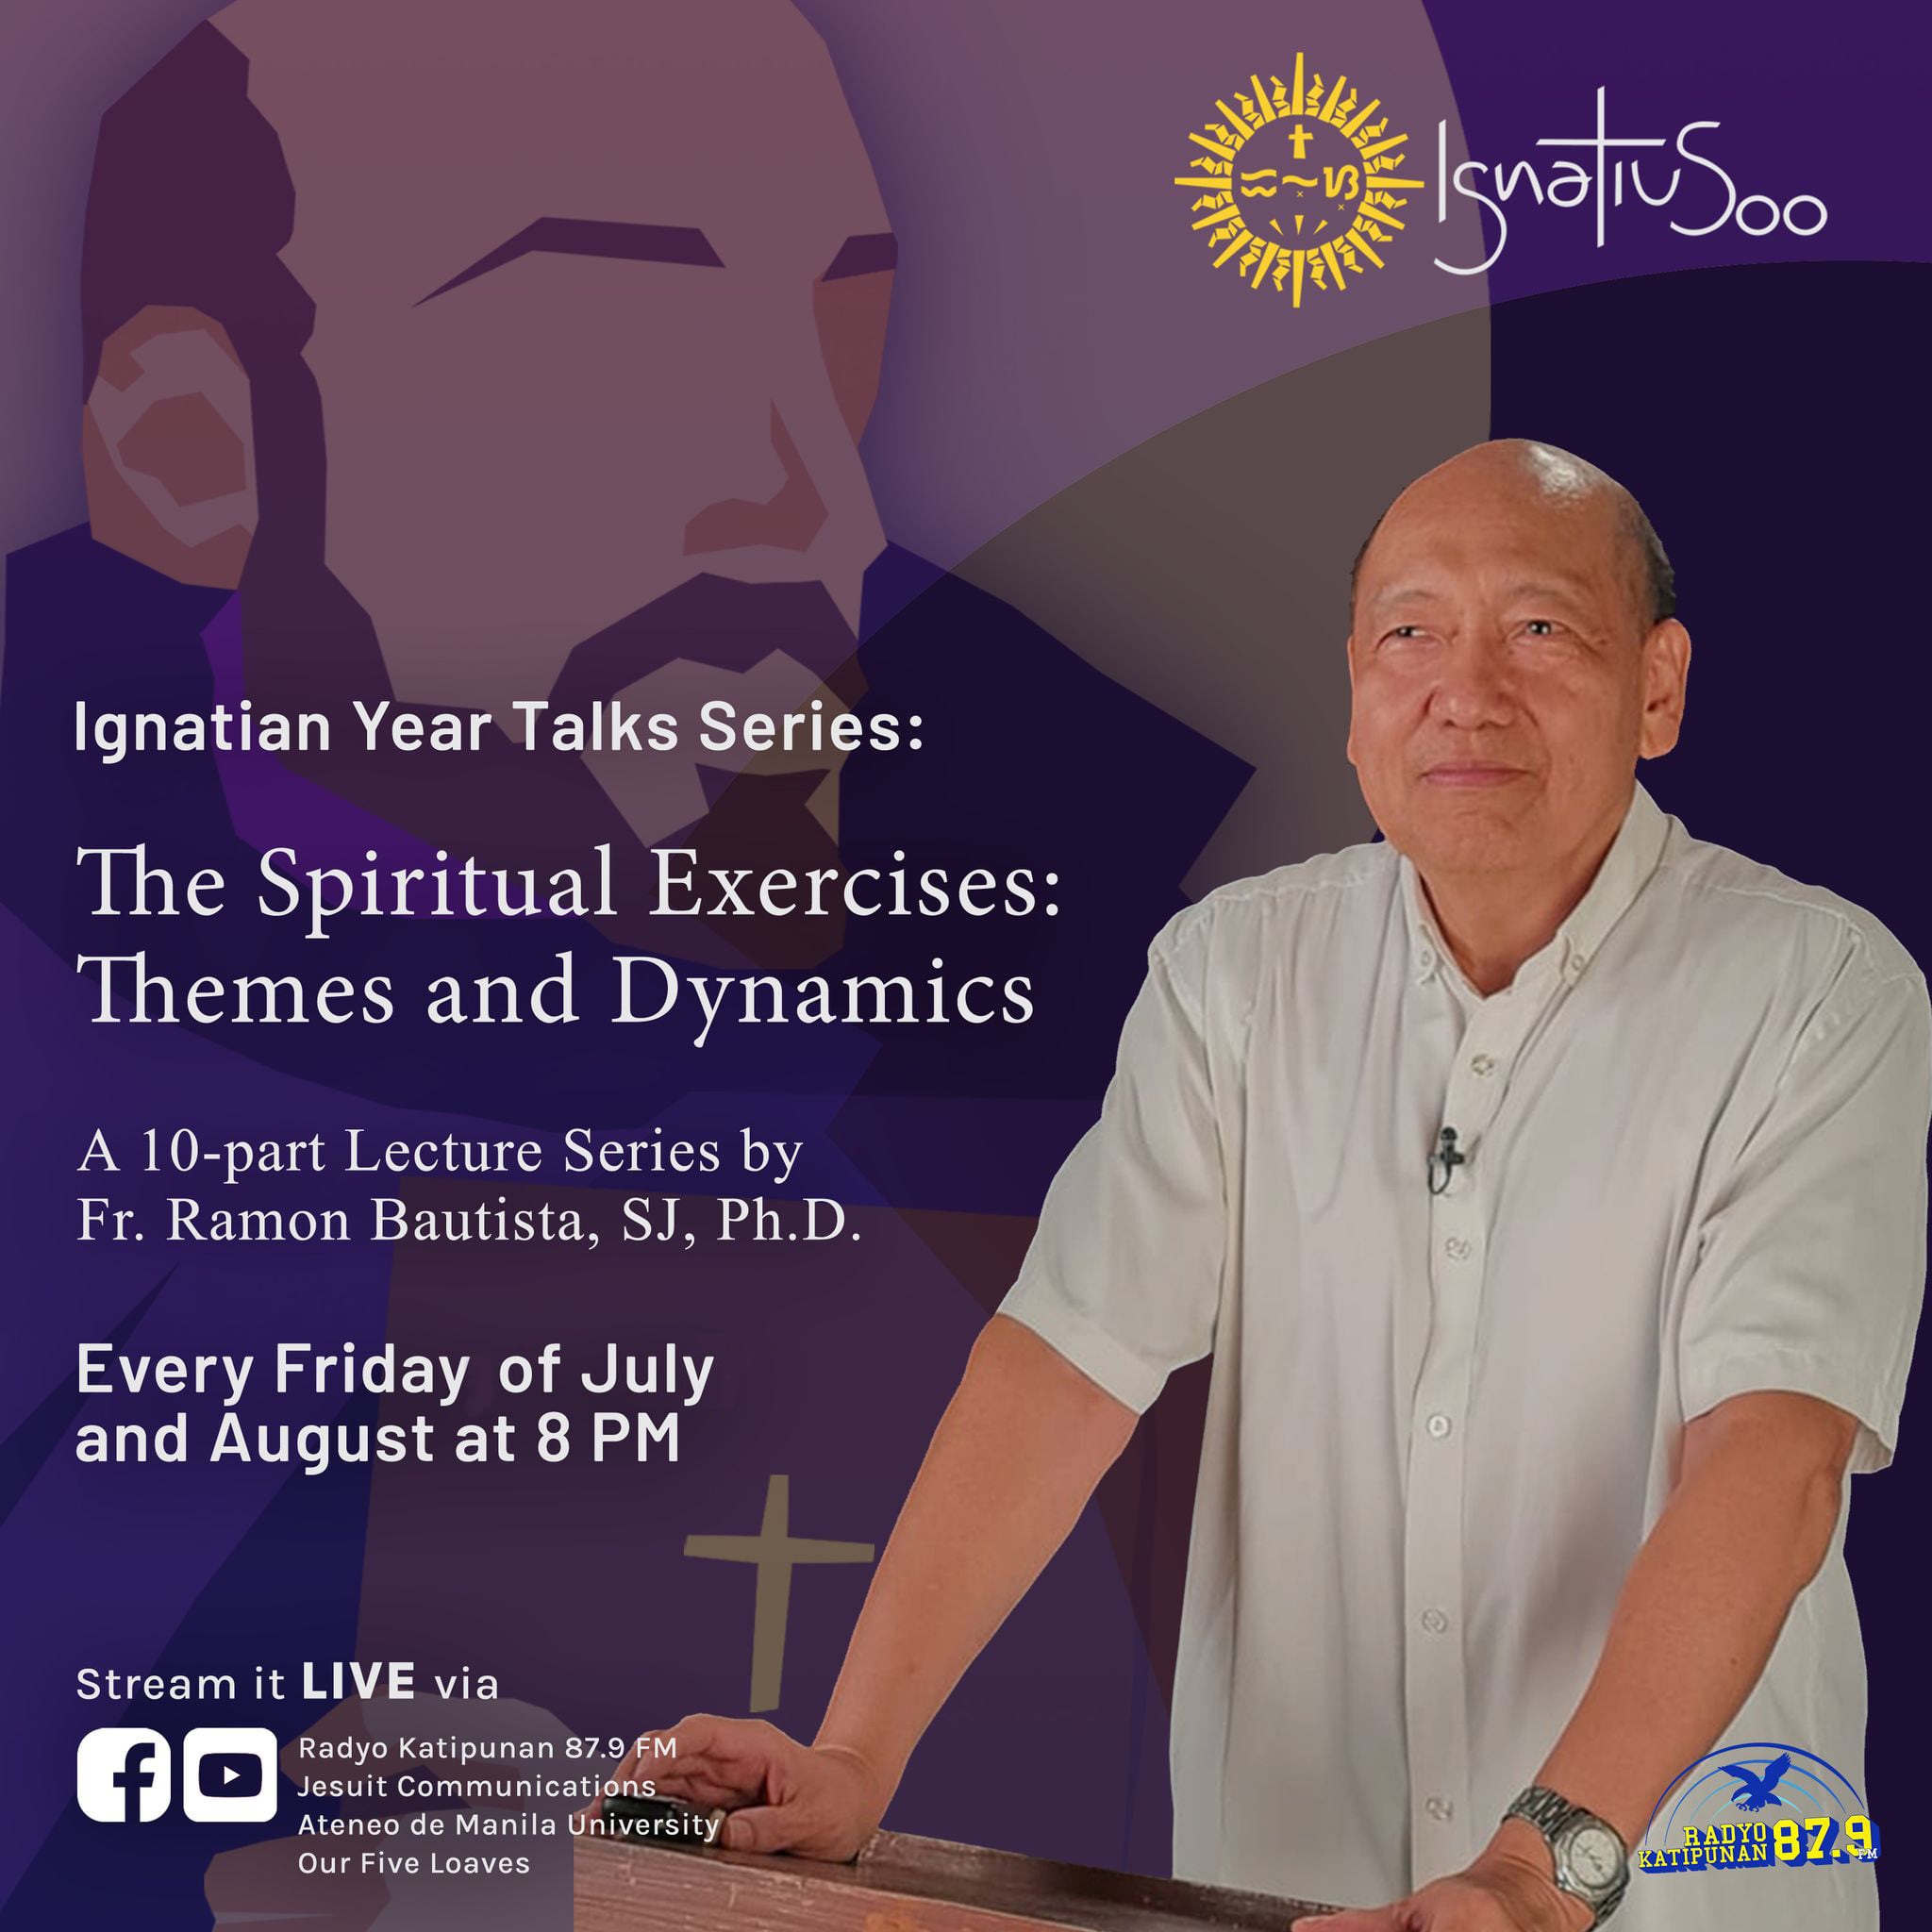 The Spiritual Exercises: Themes and Dynamics (Episode VIII) — ‘Spiritual Desolation’ with Fr. Ramon Bautista, SJ